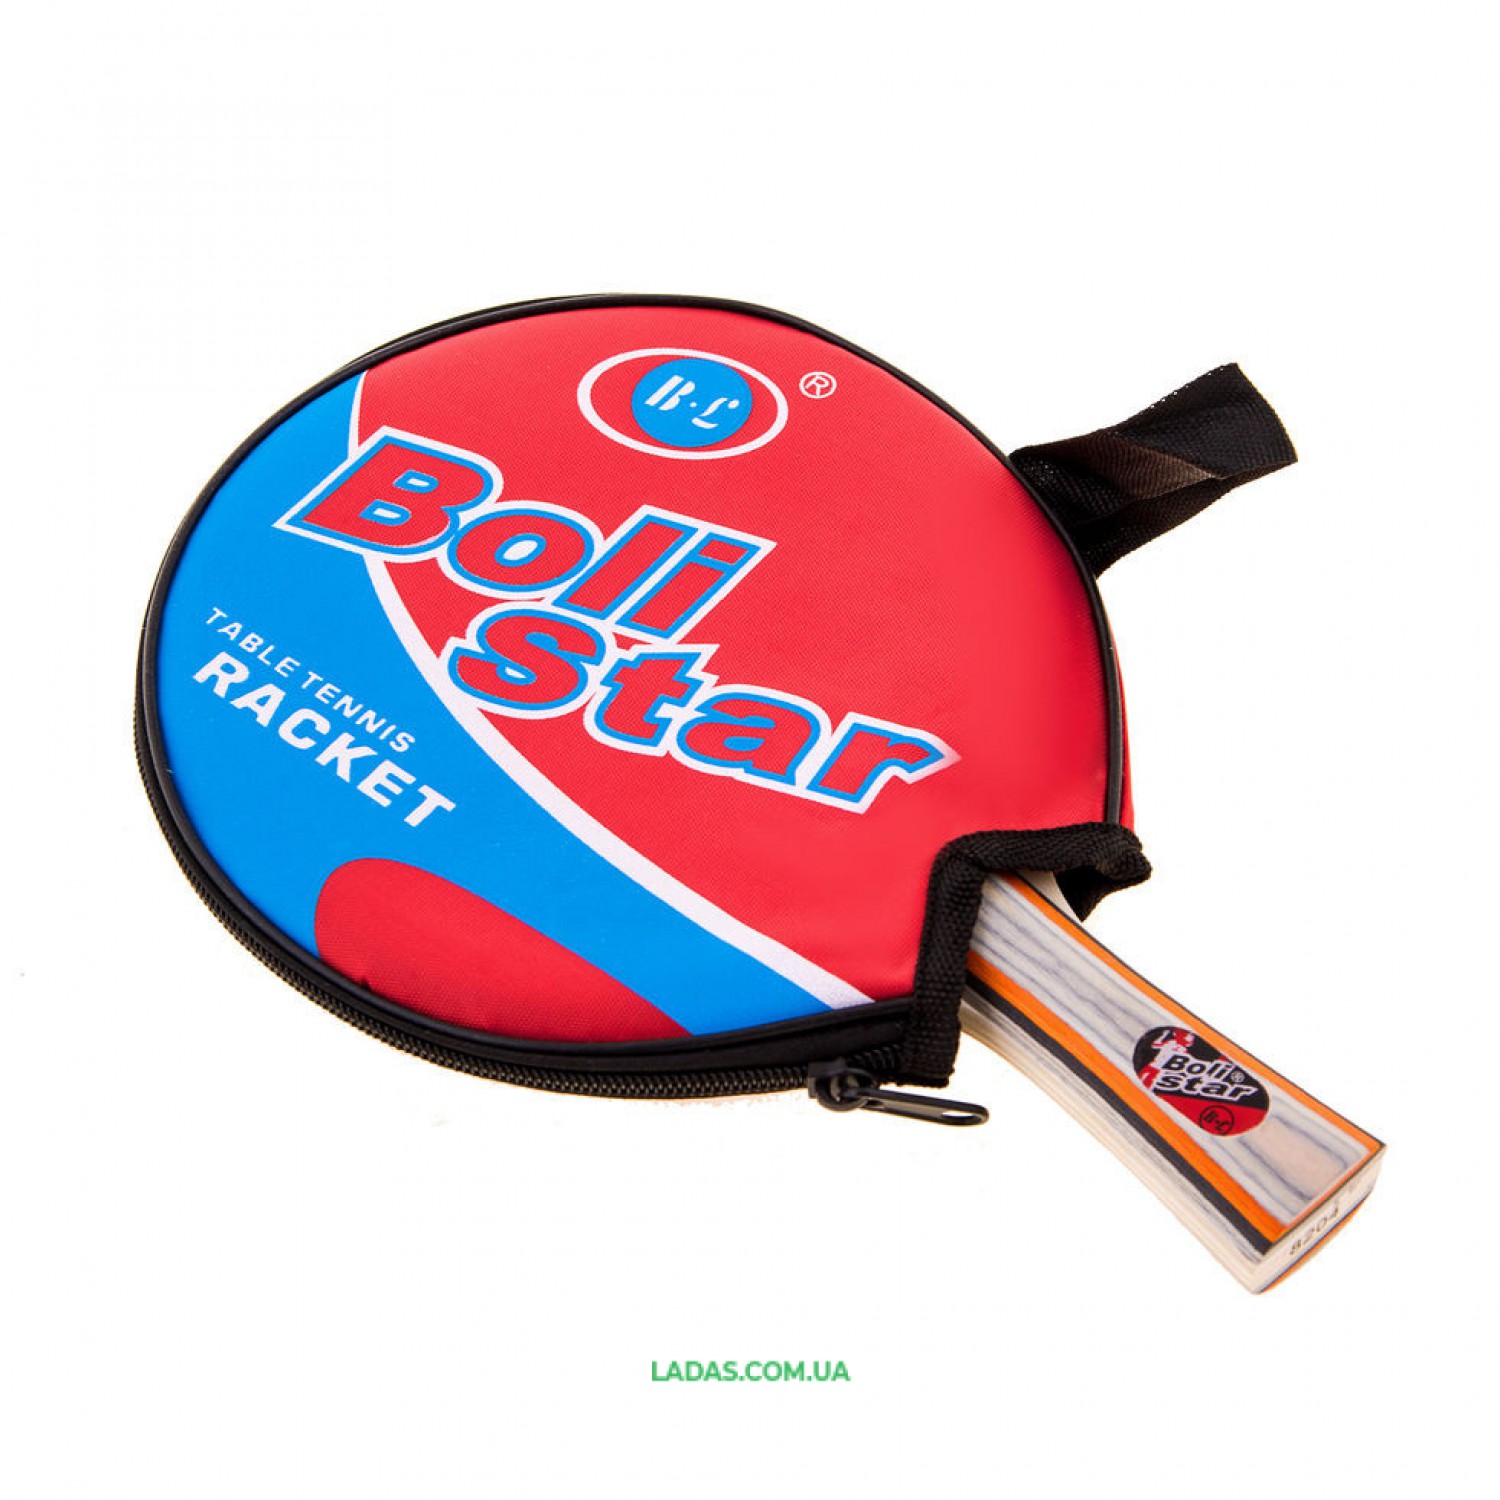 Ракетка для настольного тенниса Boli Star